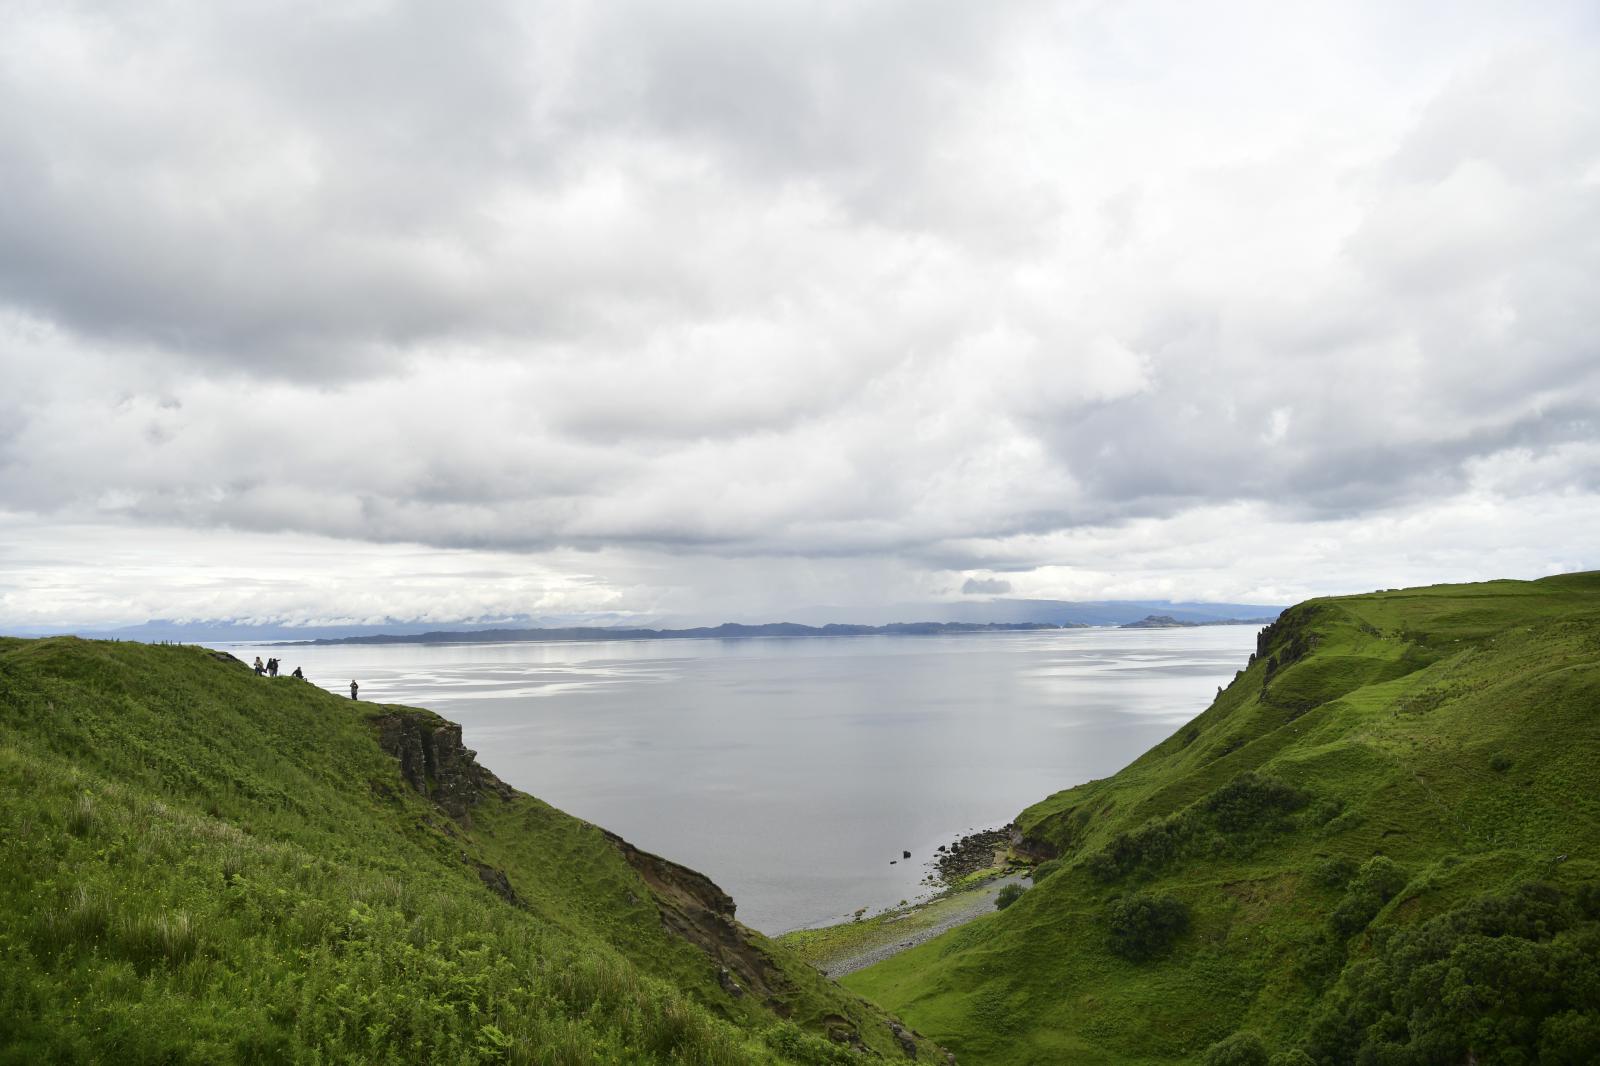 Image from Daily Life UK - Isle of Skye, West coast of Scotland